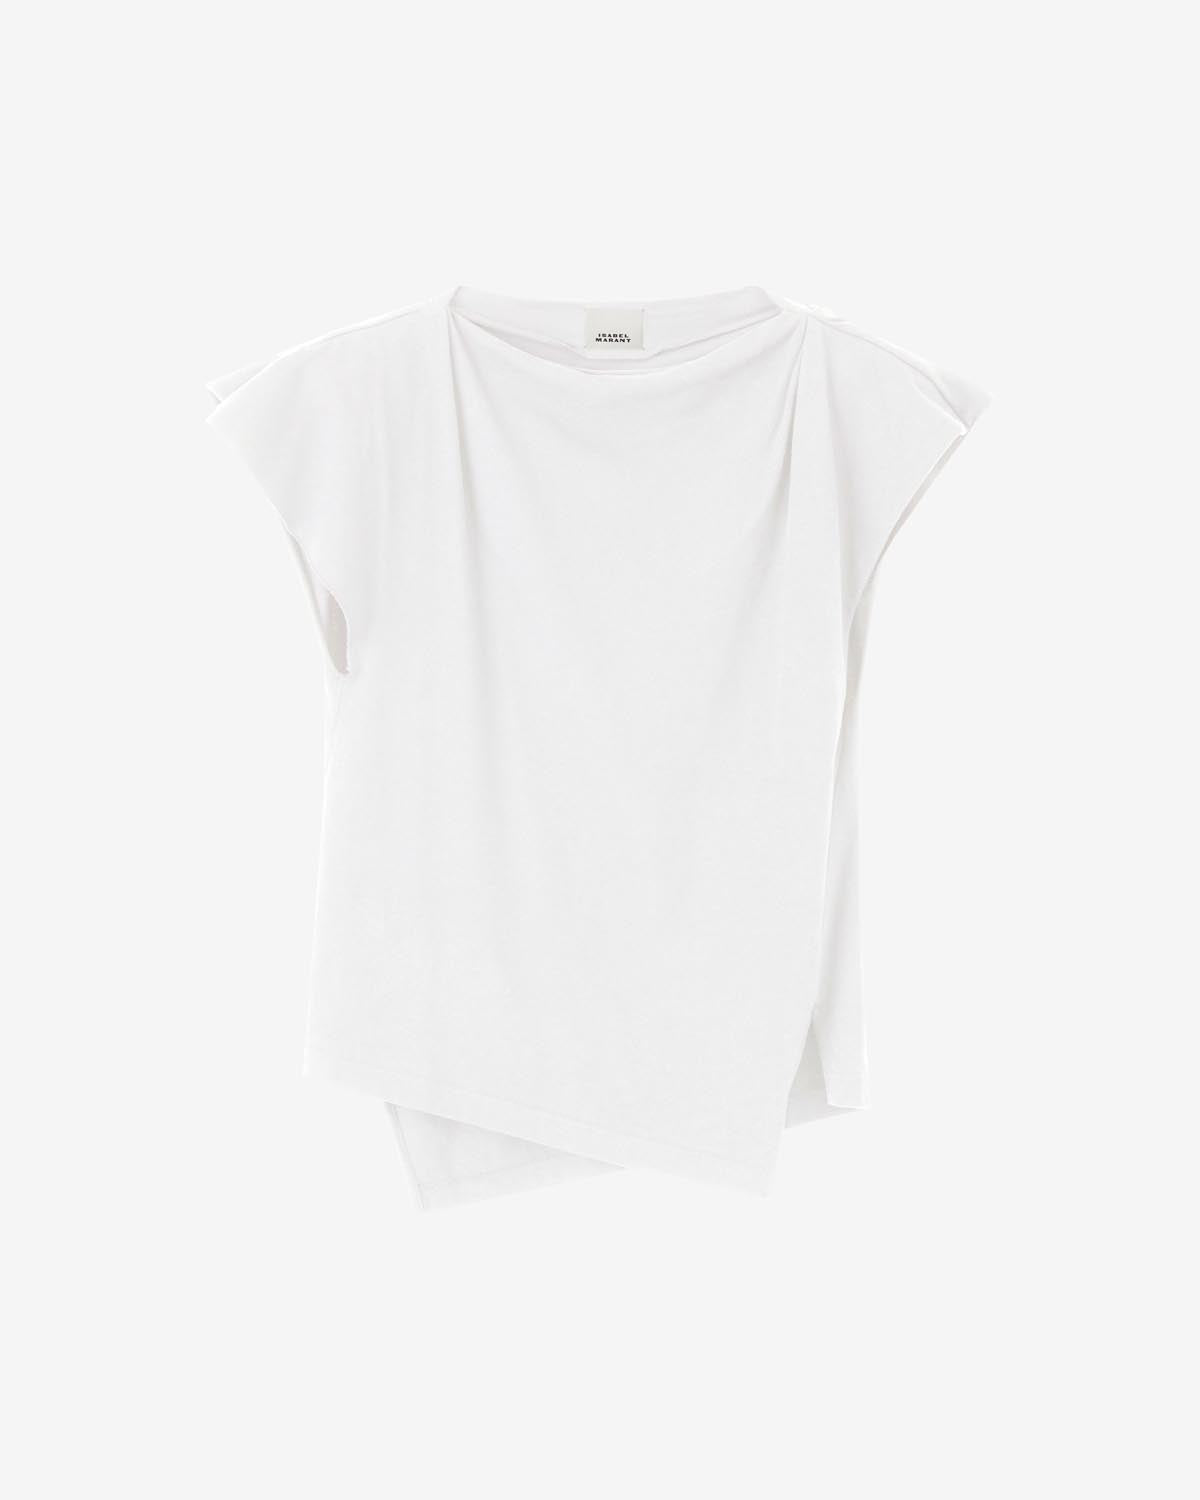 Sebani t-shirt Woman White 1